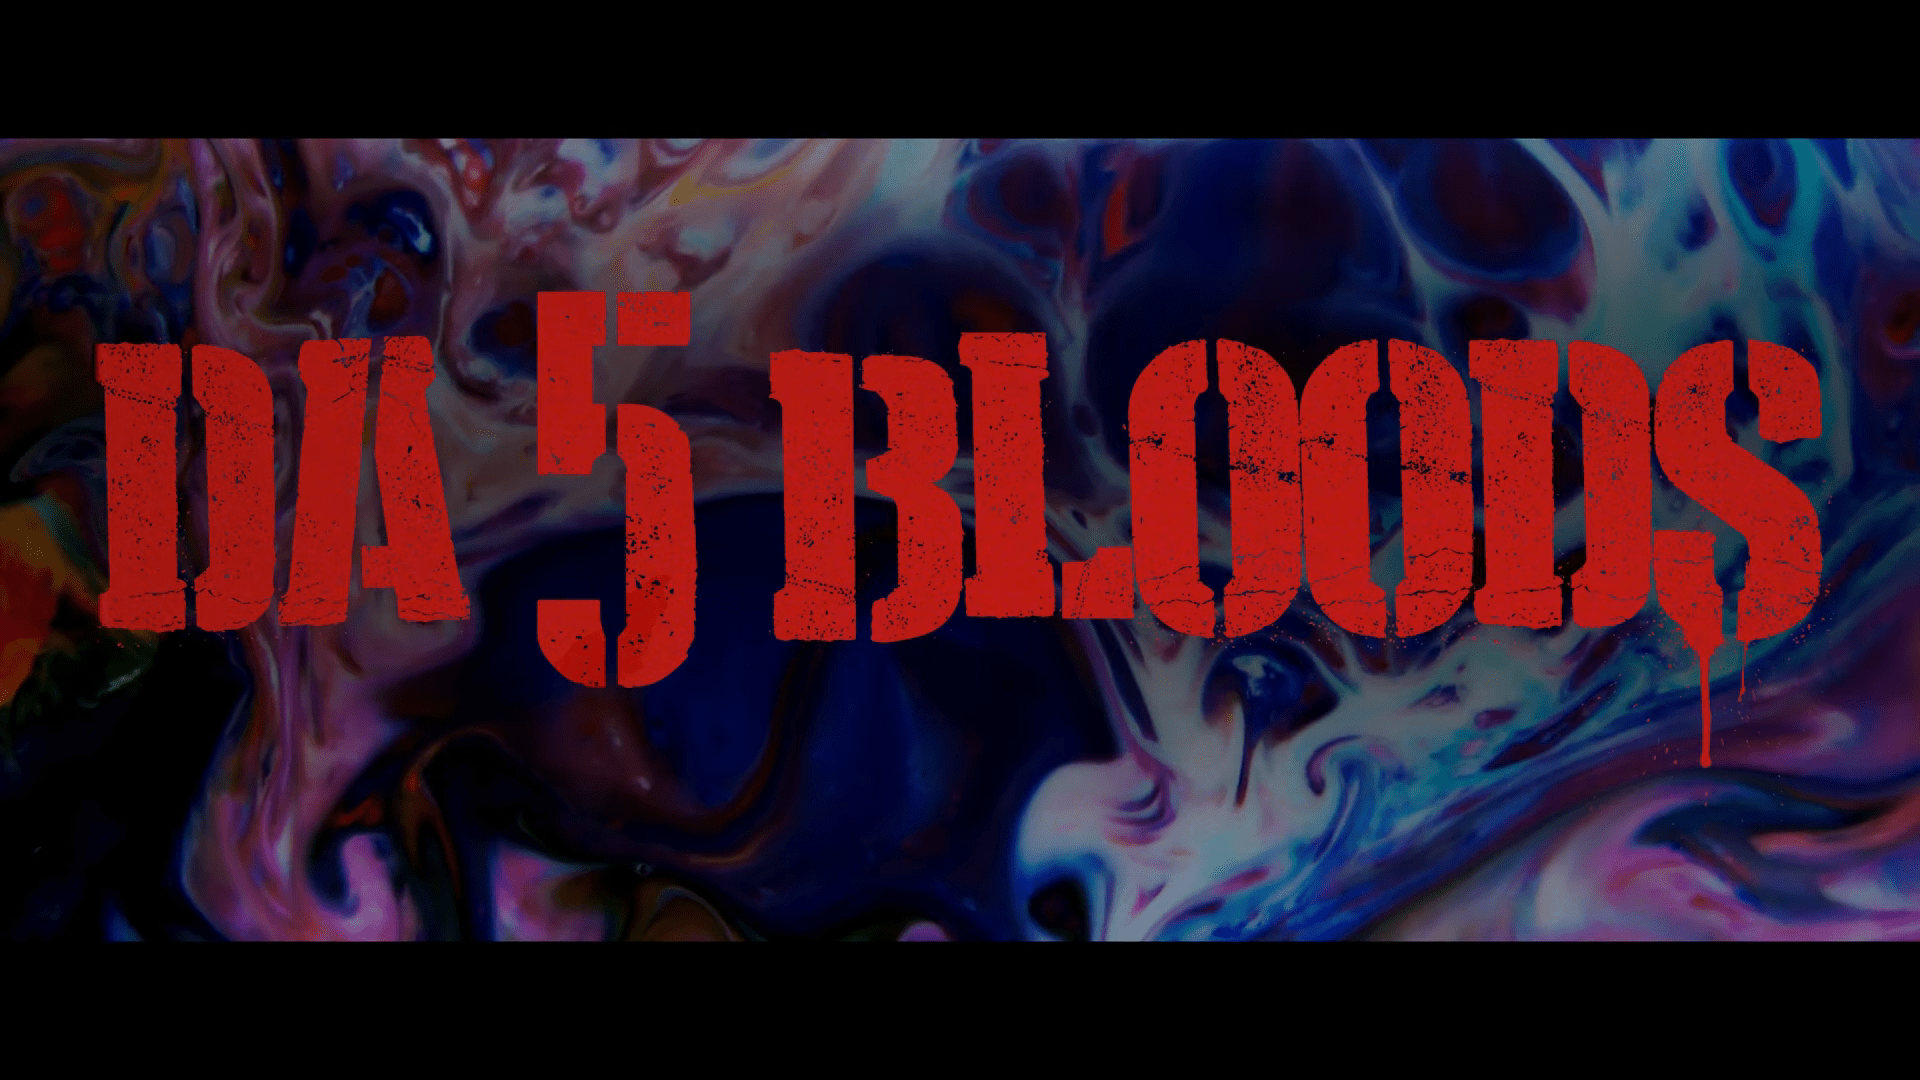 Da 5 Bloods [TRAILER] Coming to Netflix June 12, 2020 2